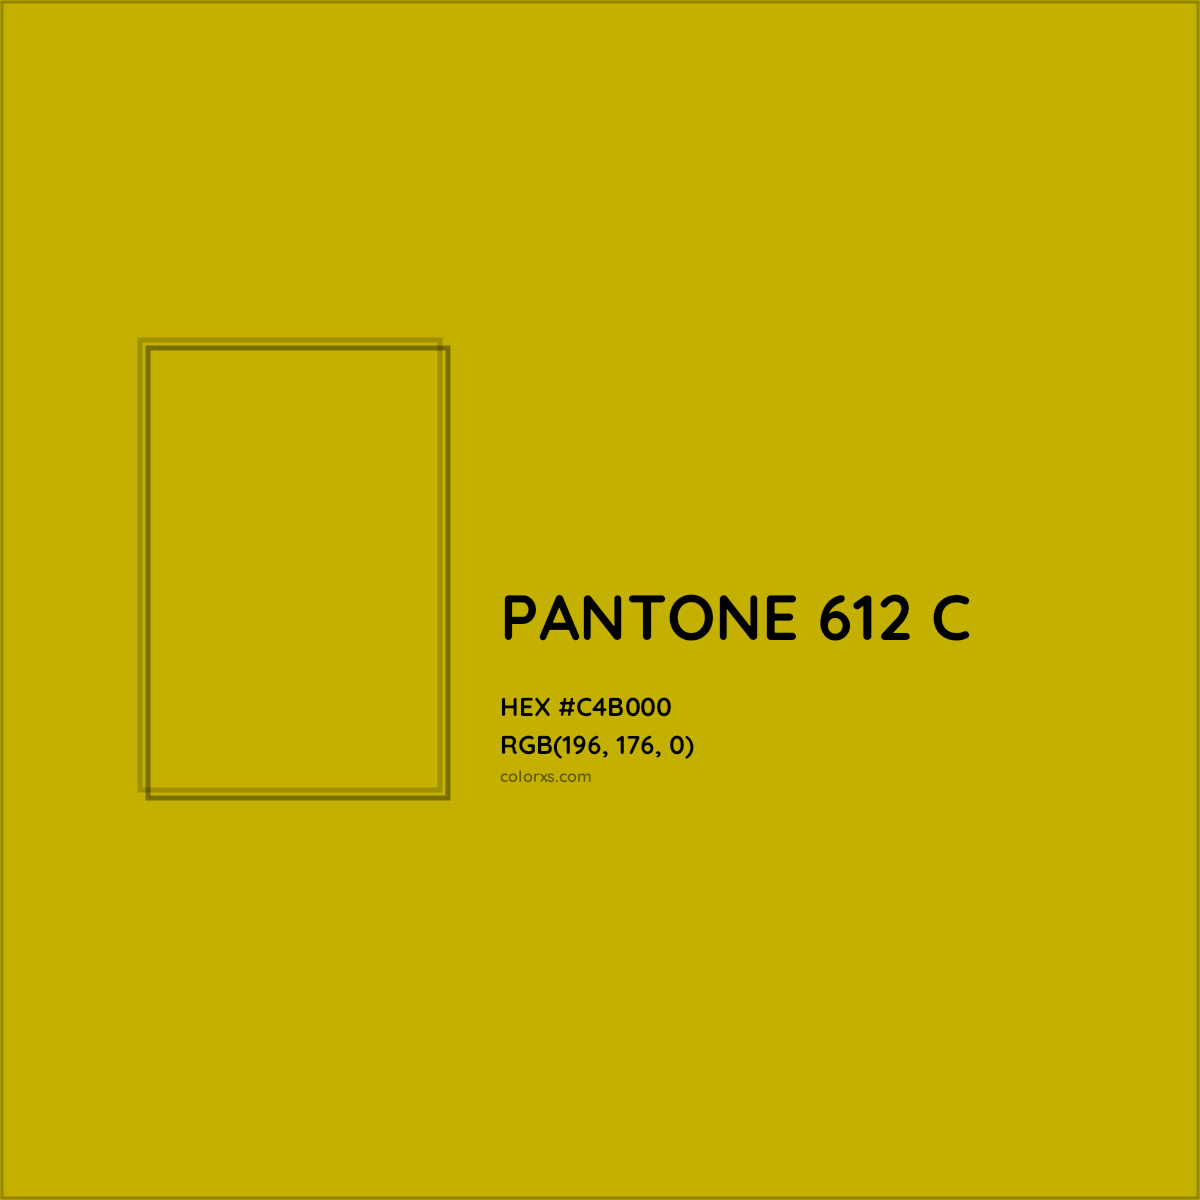 HEX #C4B000 PANTONE 612 C CMS Pantone PMS - Color Code